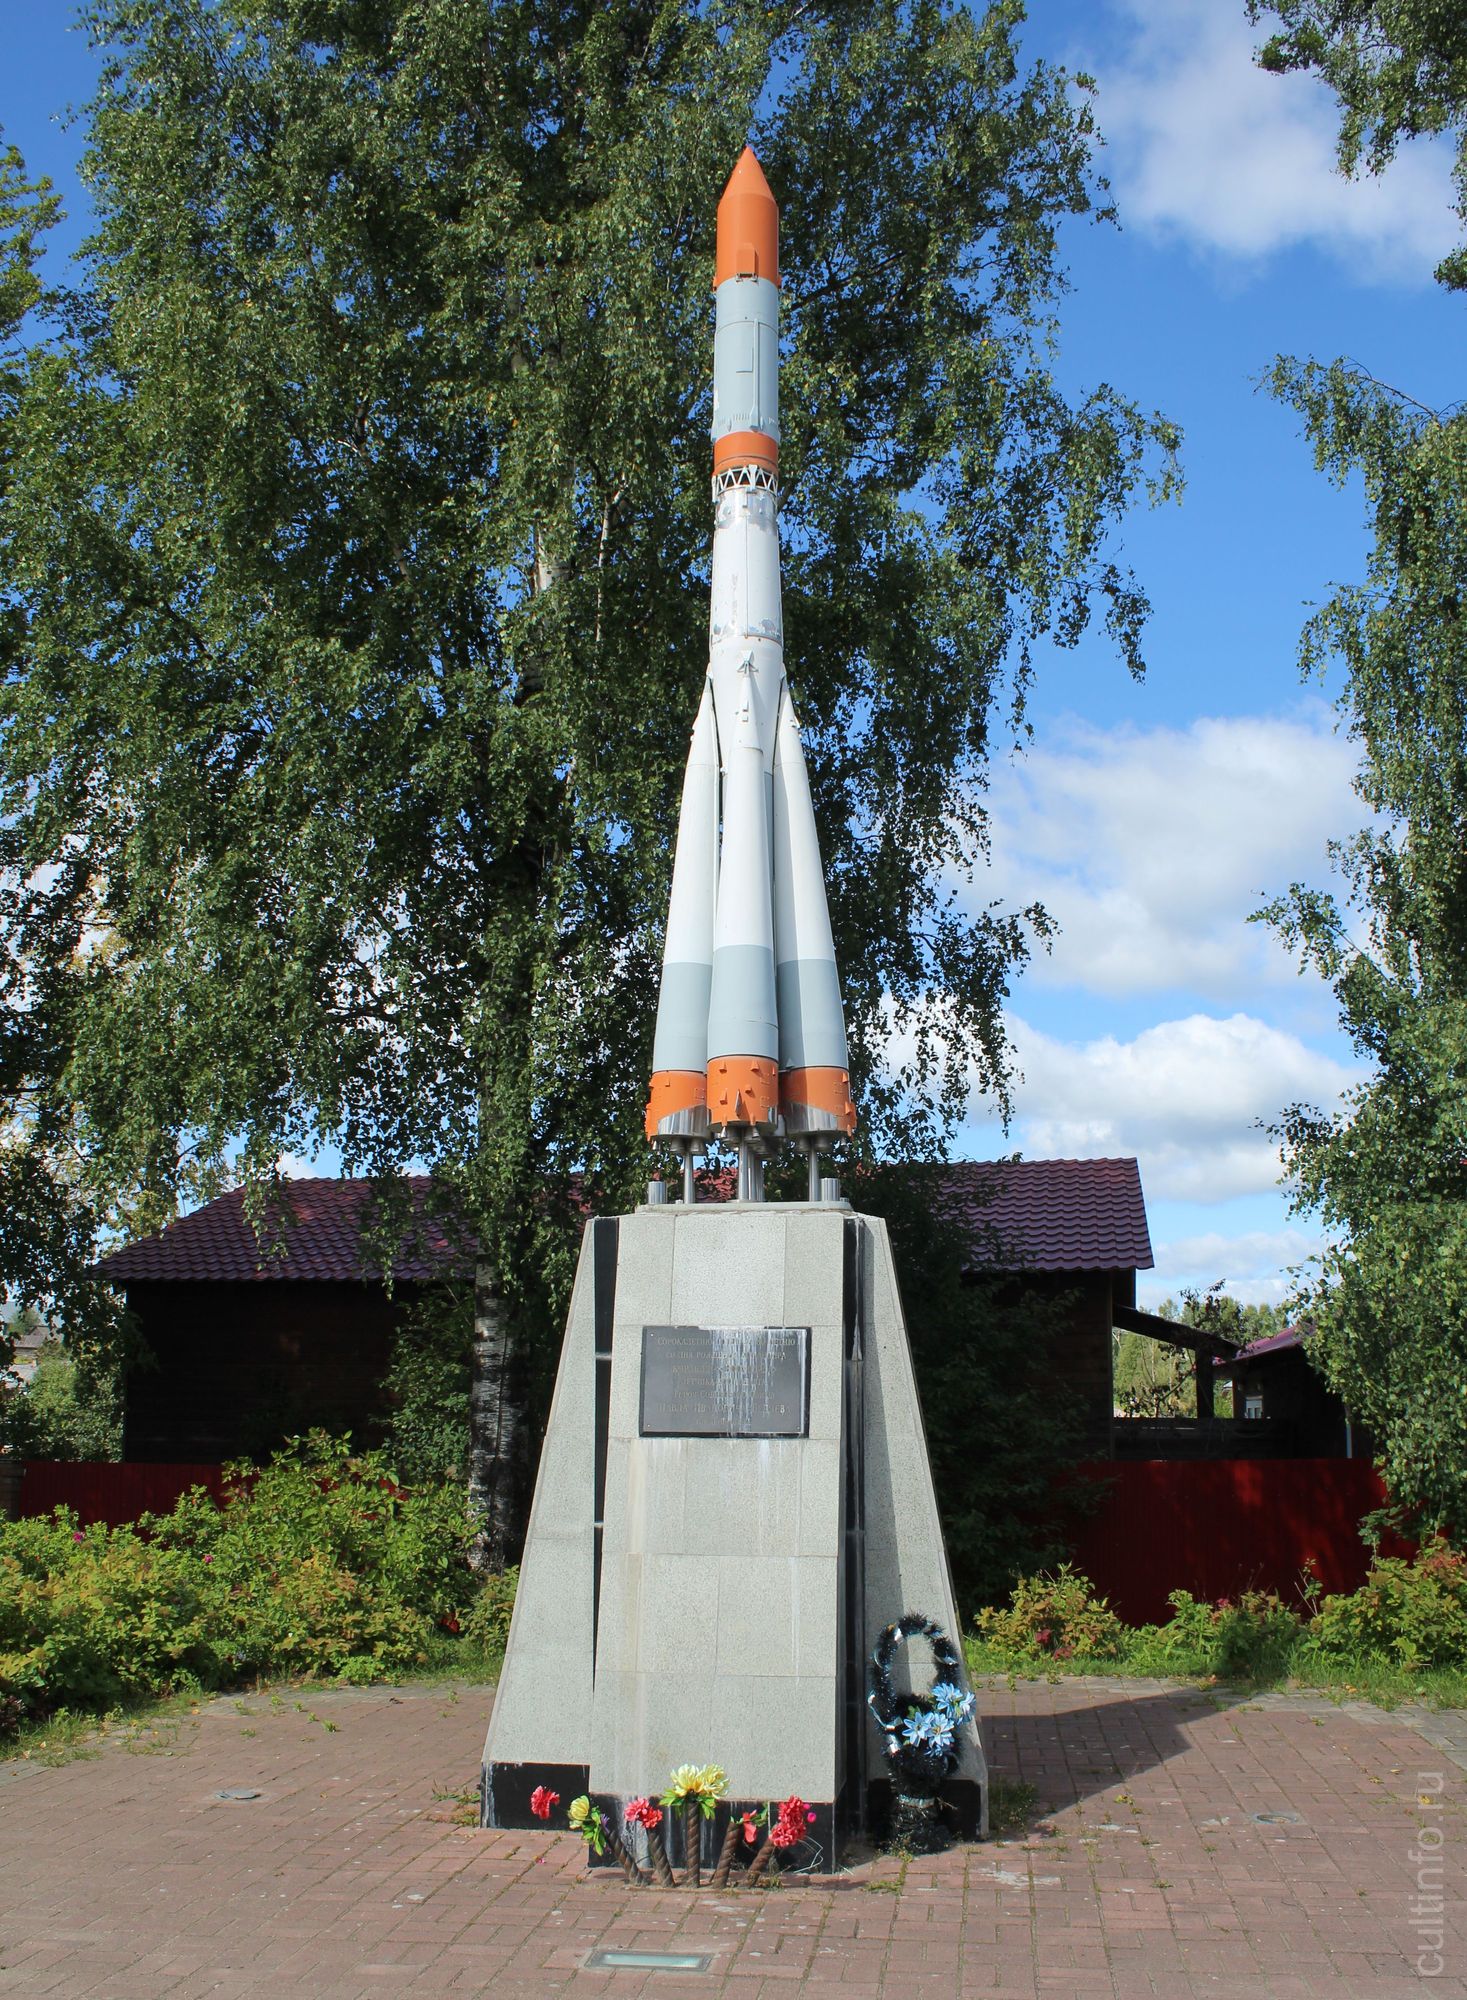 Макет ракеты «Восход-2» в селе Бабушкино